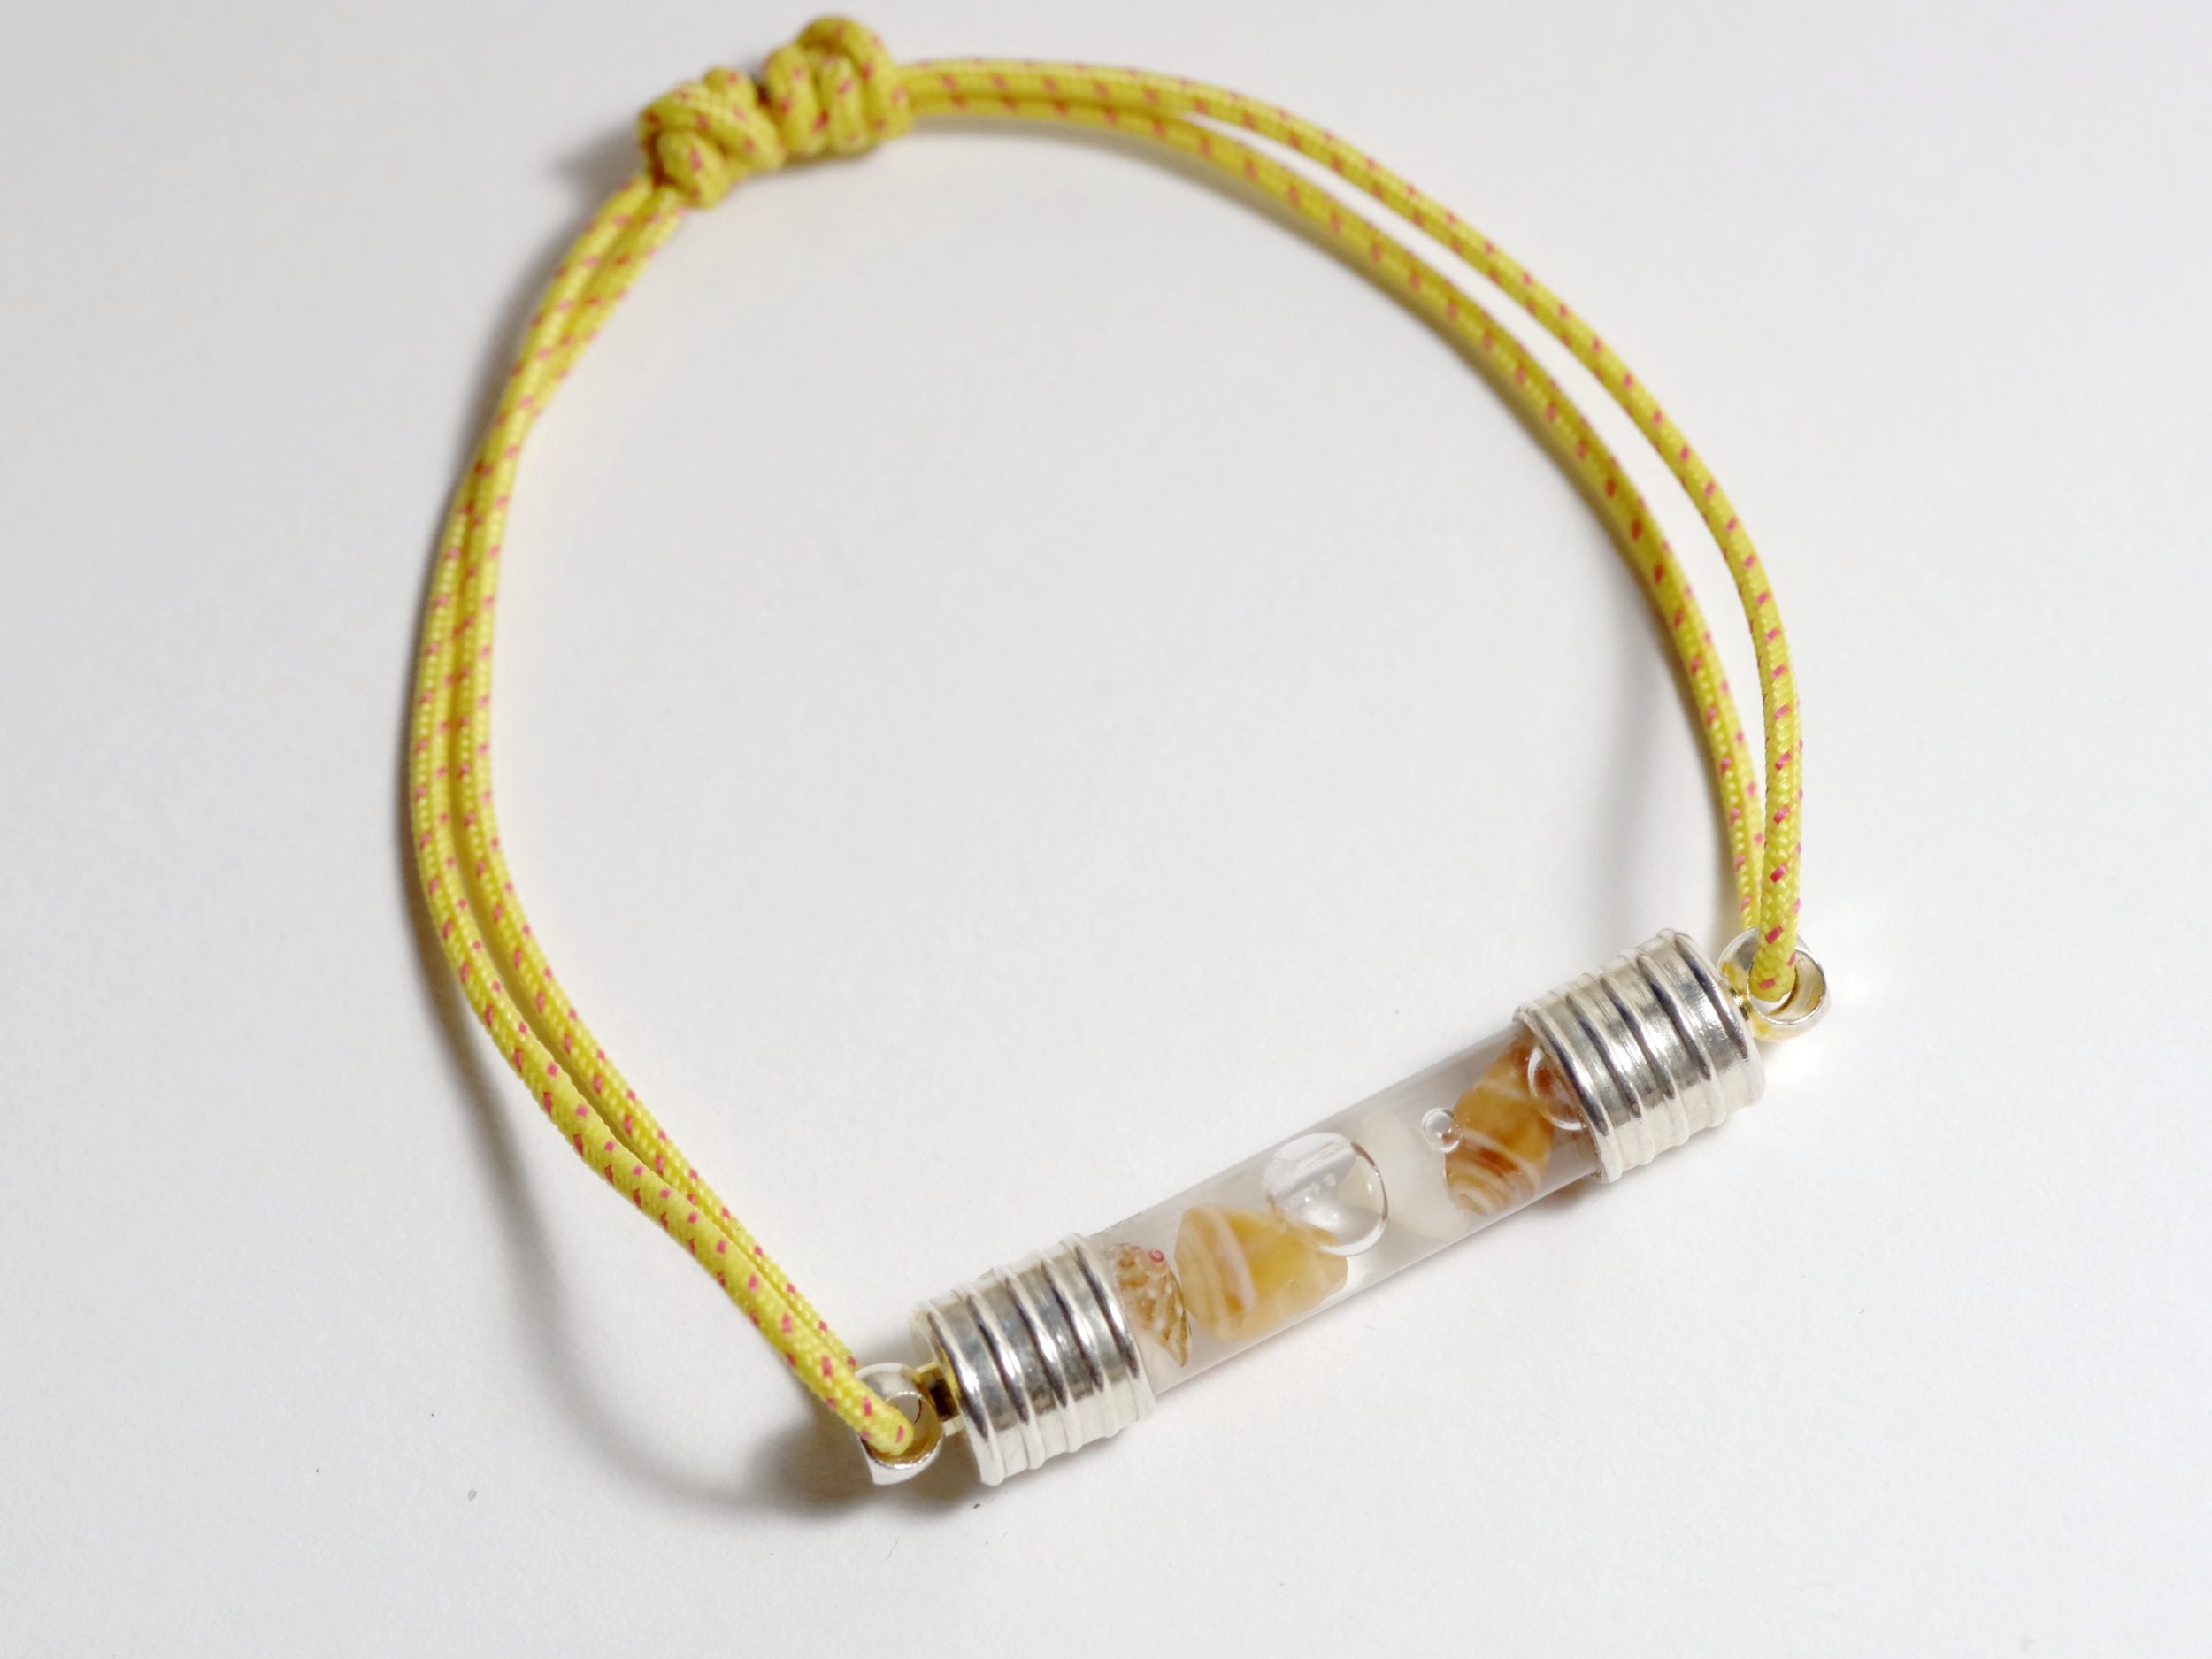 bracelet réglable en cordelette marine jaune orangé avec un tube de verre rempli de macrocoquillages